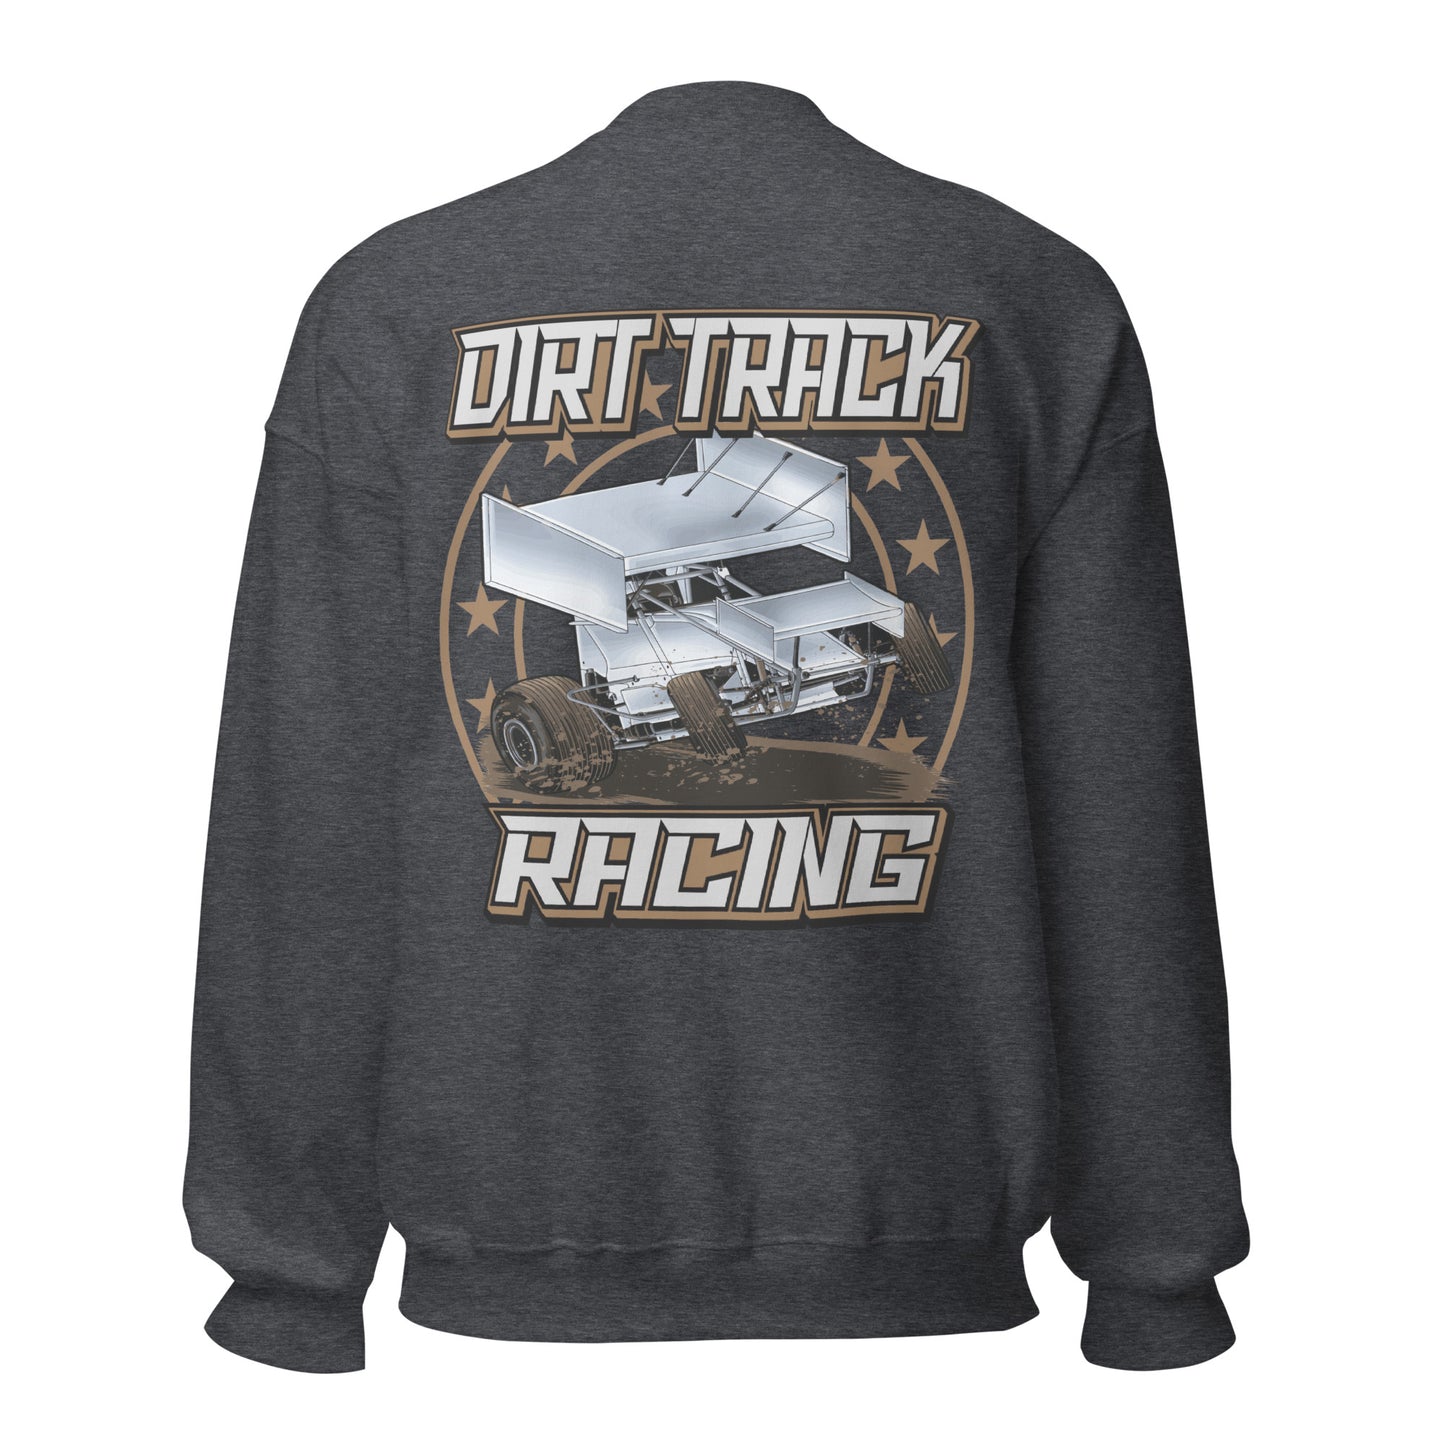 Dirt Track Racing Adult Crew Sweatshirt